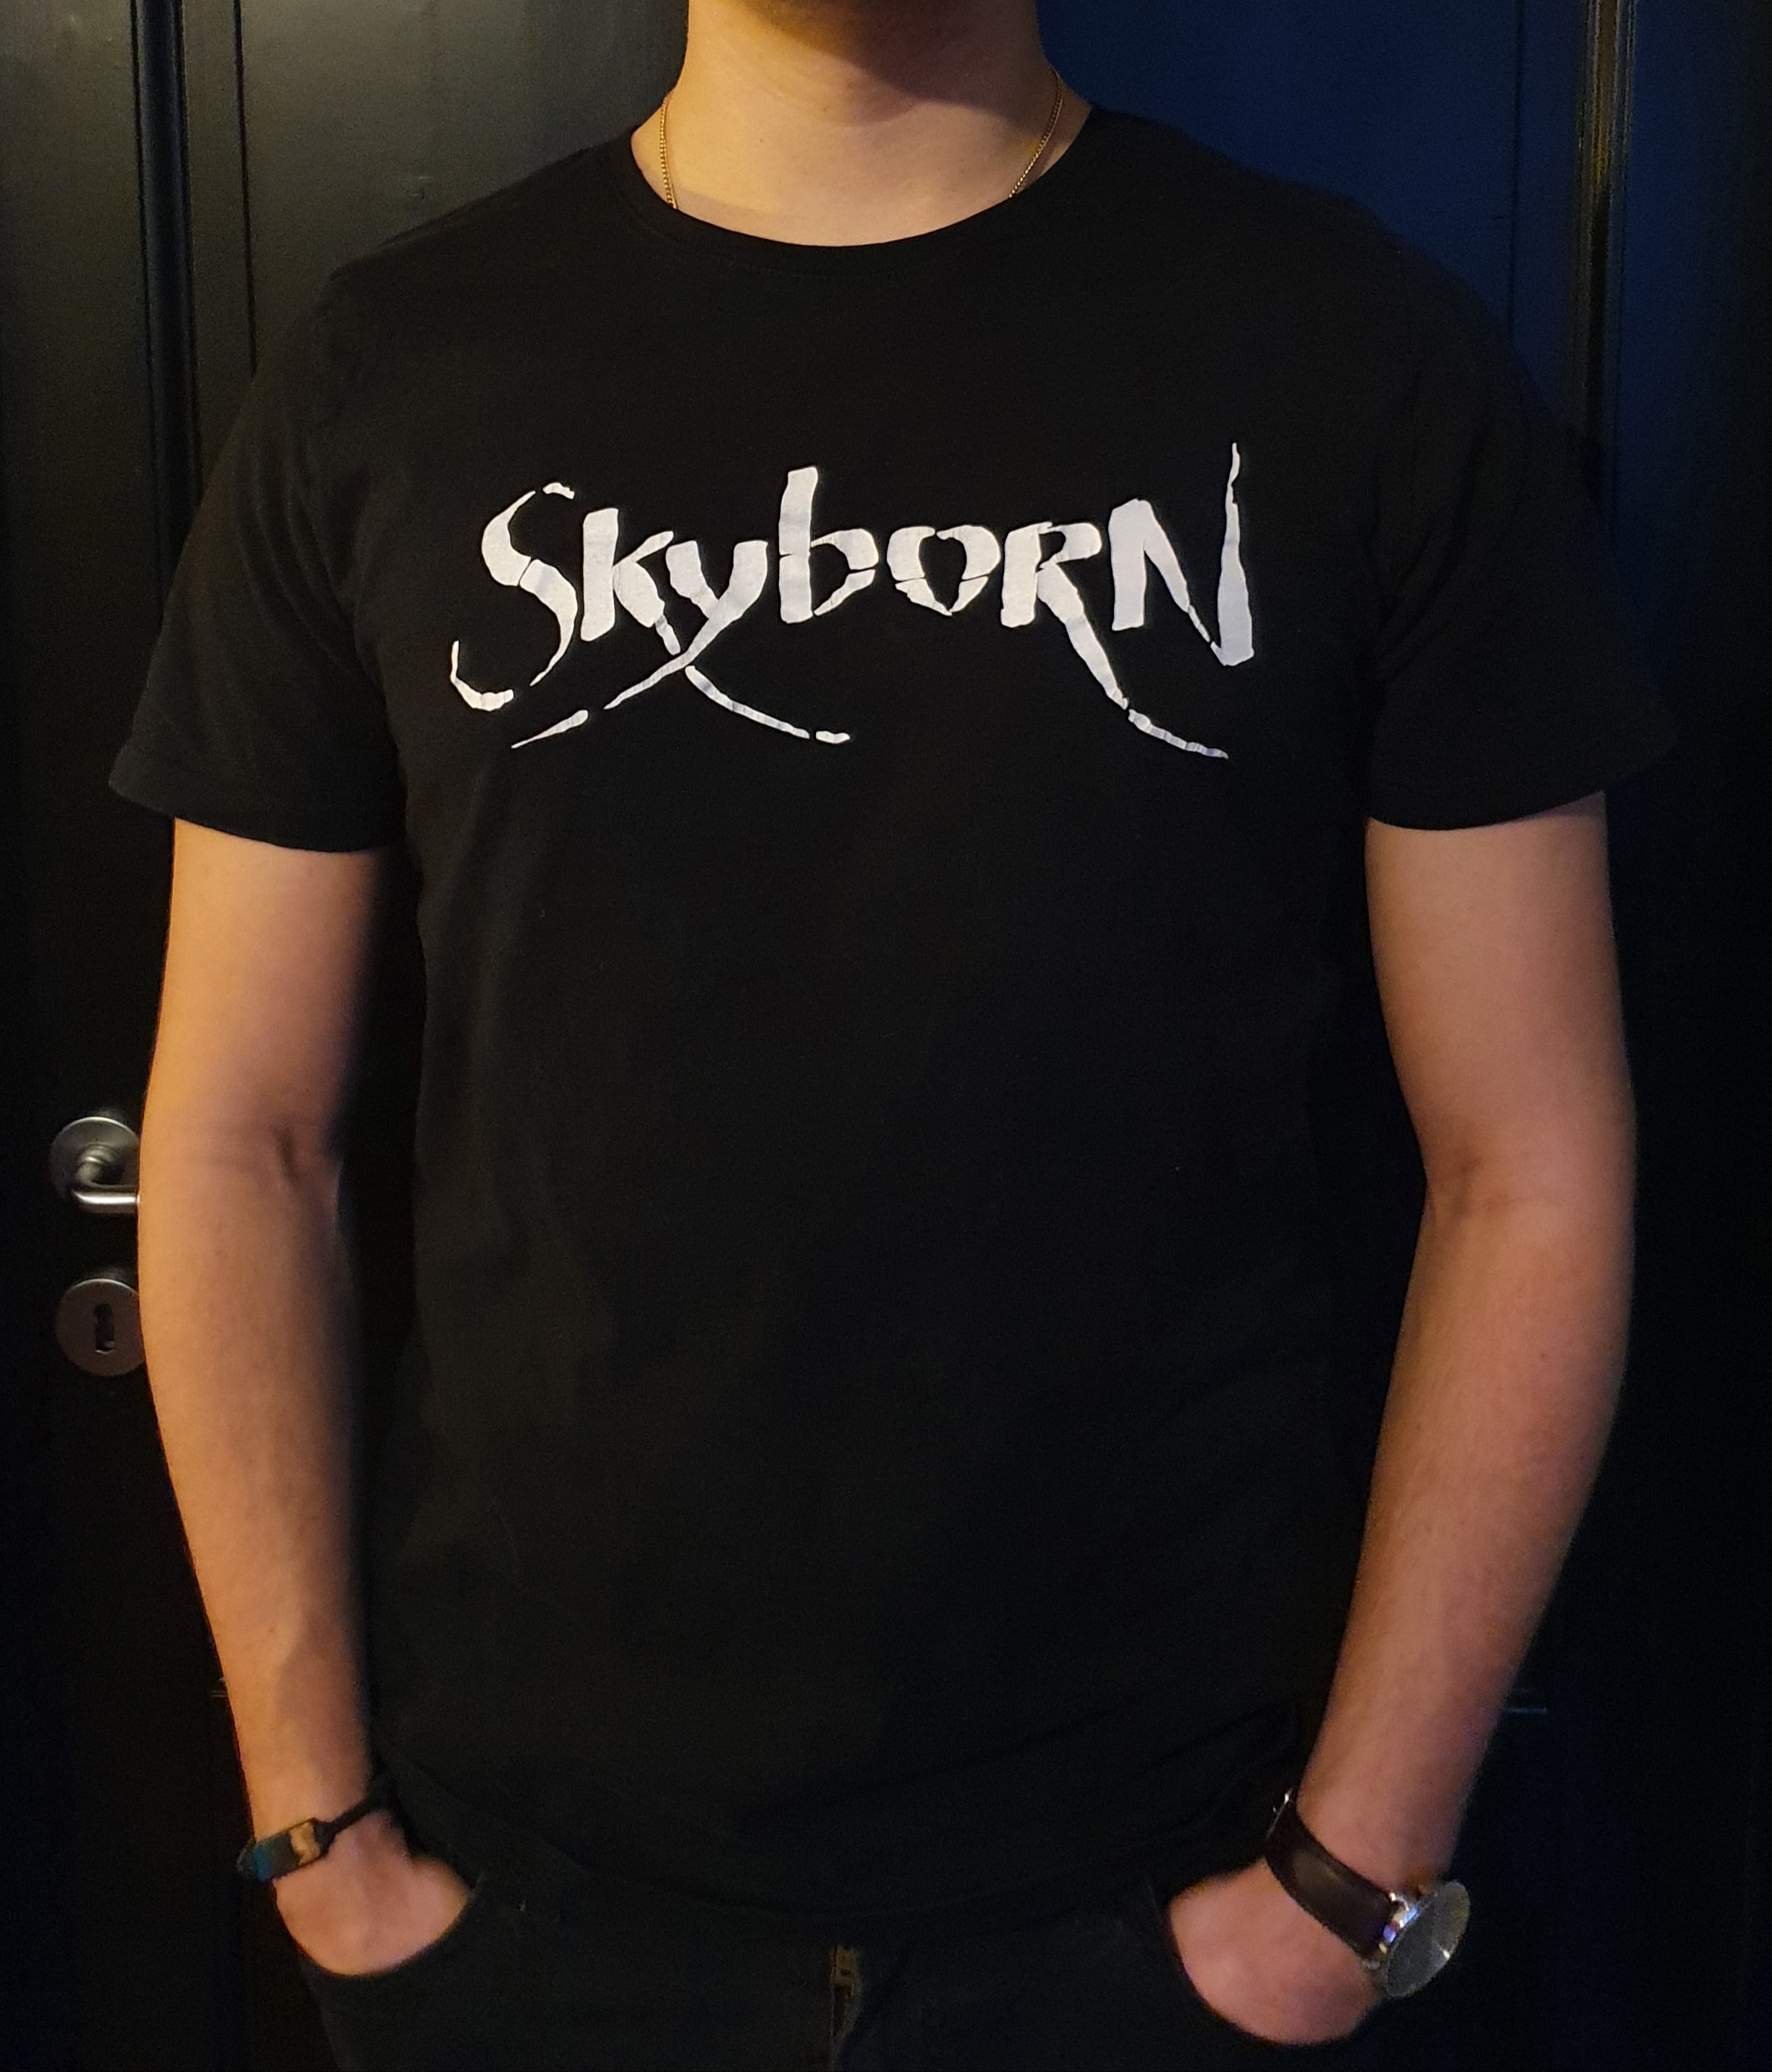 t-shirt mit skyborn-Aufdruck